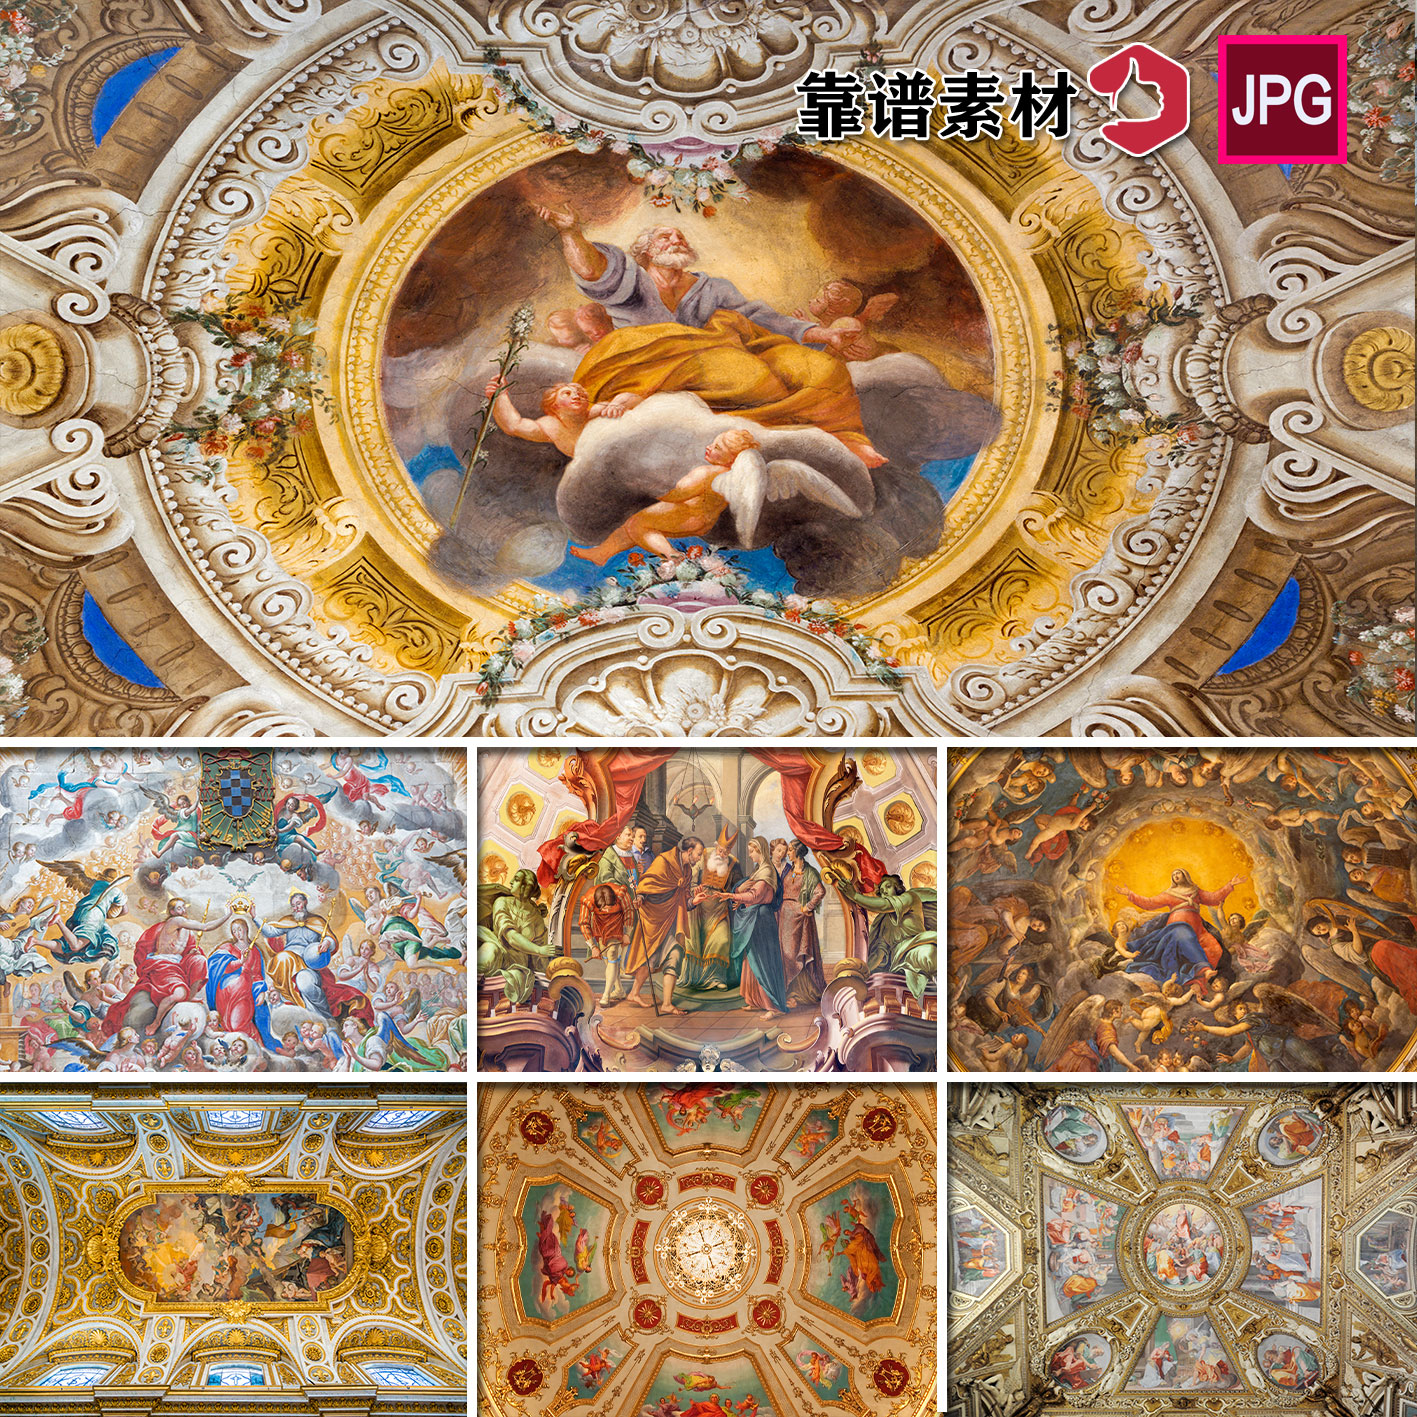 西方教堂宗教宫殿油画壁画人物画吊顶天顶高清背景图片设计素材